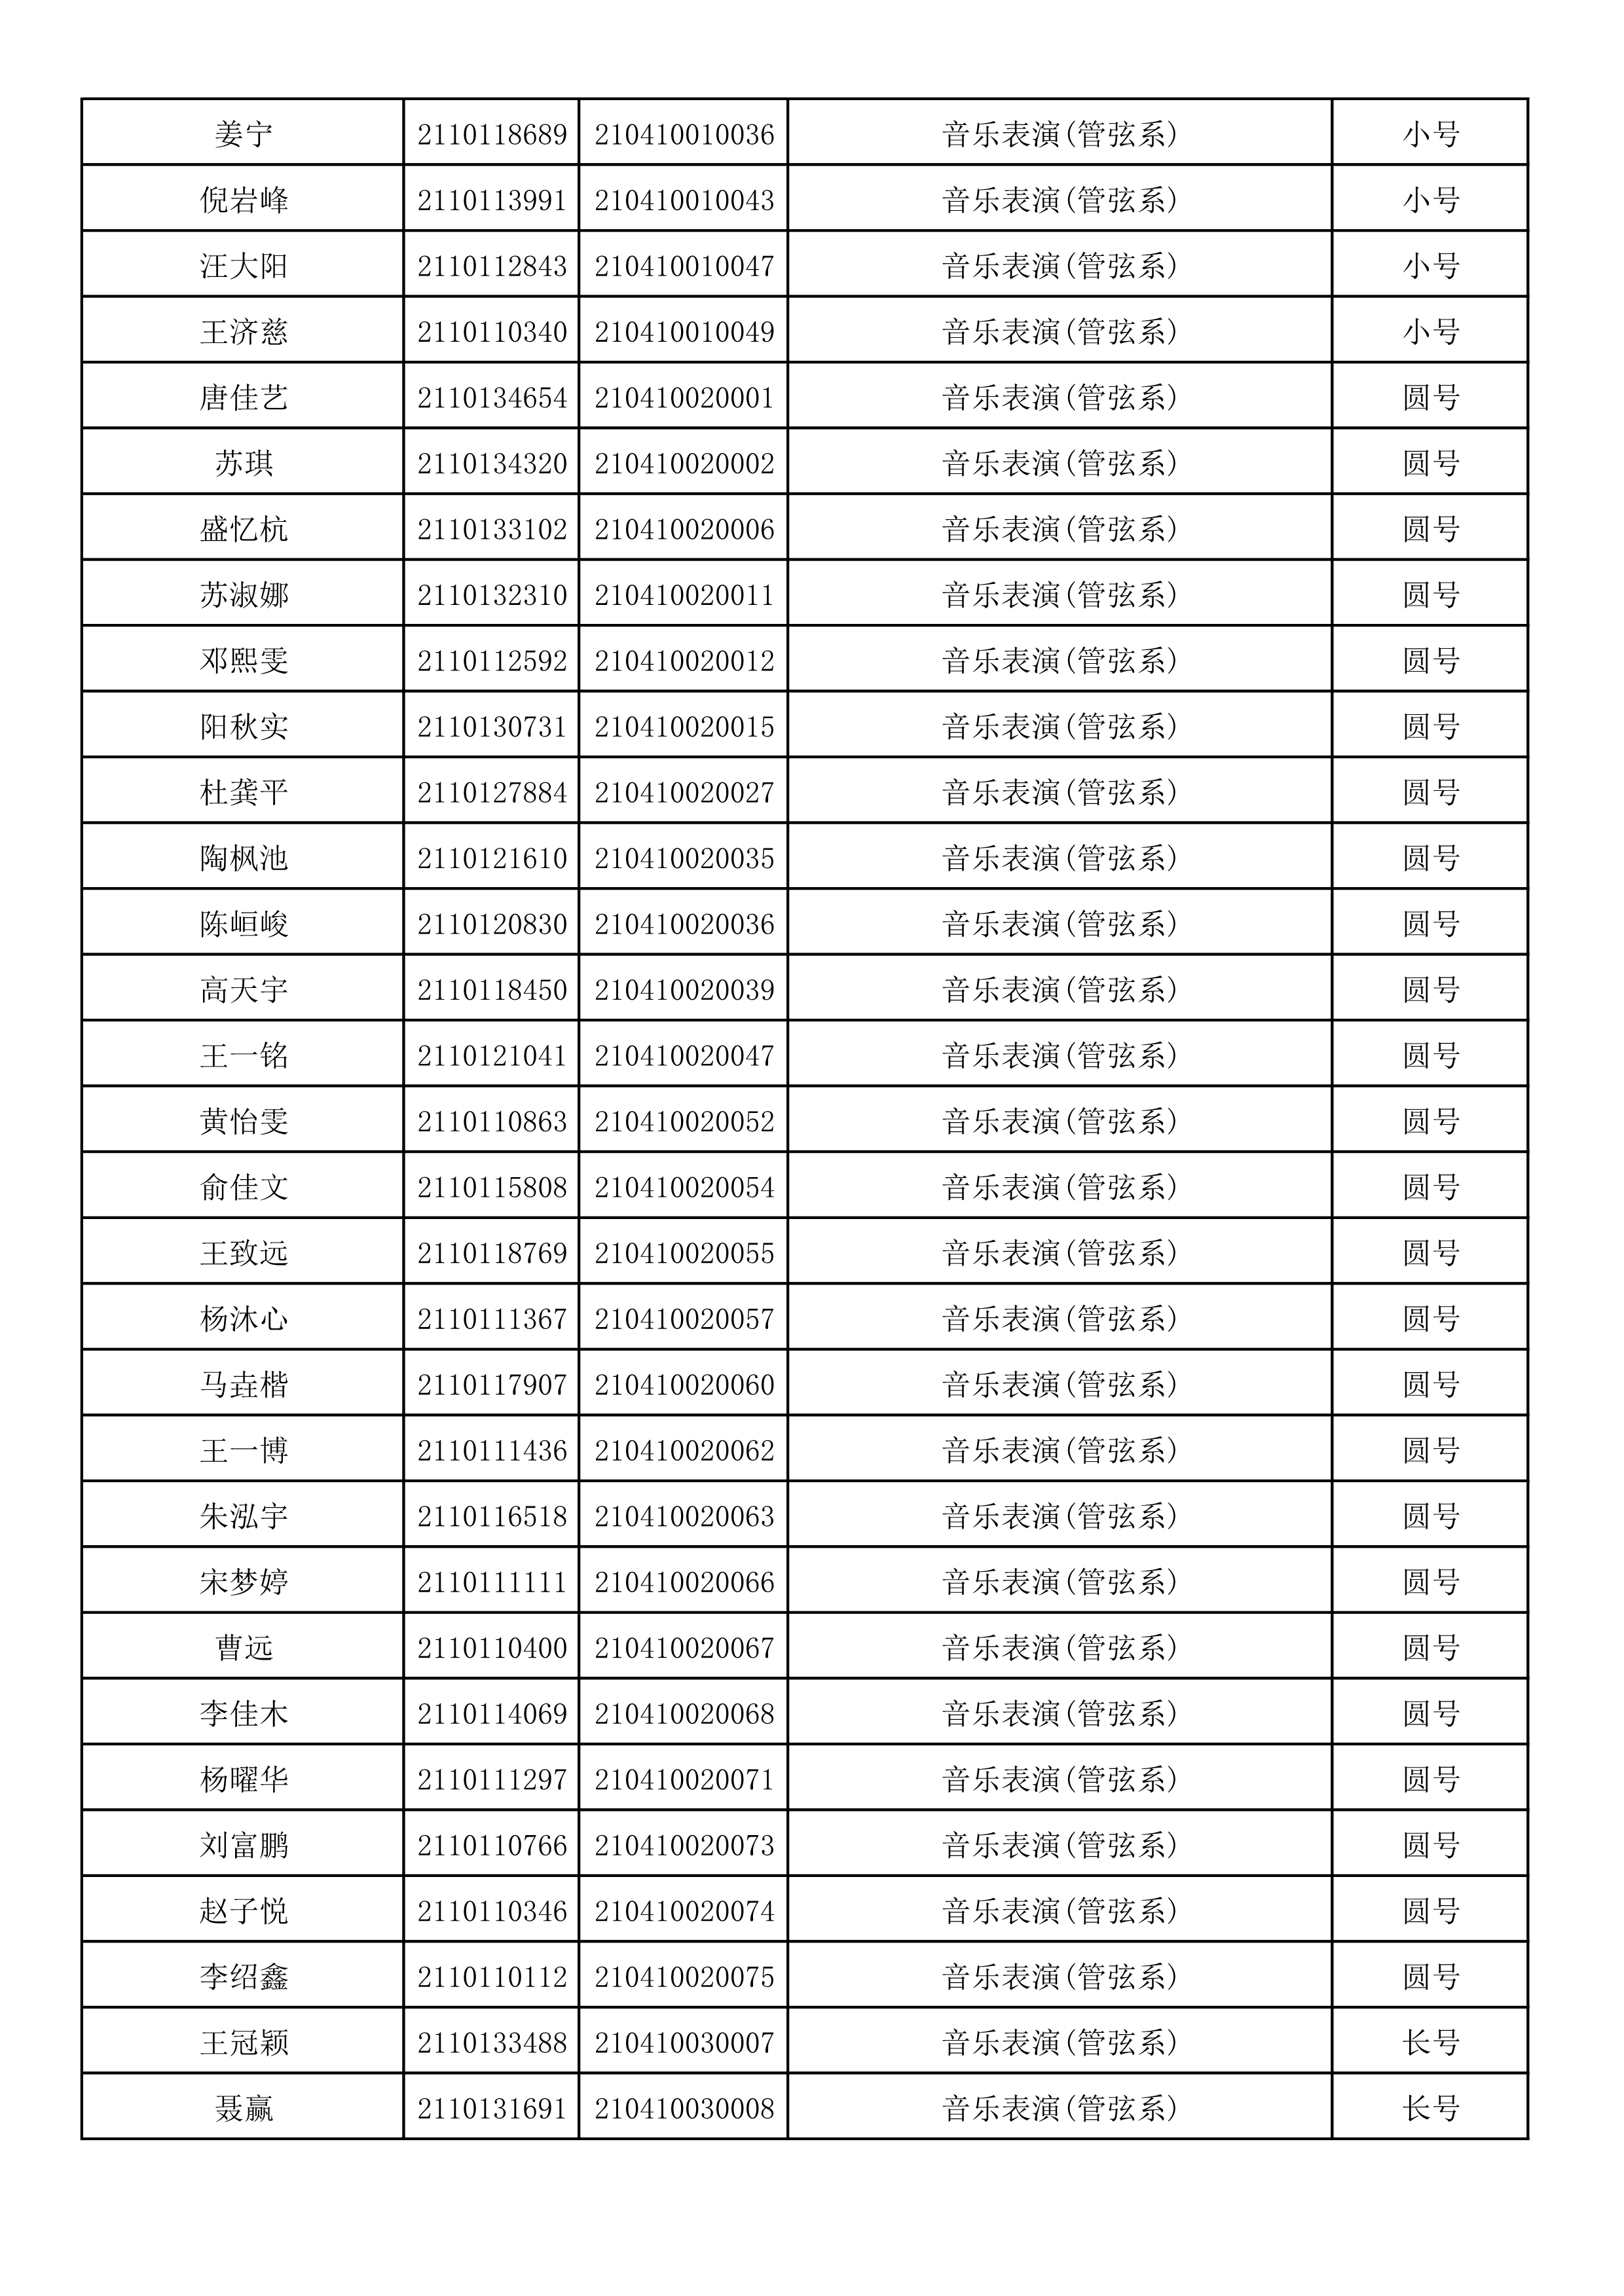 附件2：浙江音乐学院2021年本科招生专业校考初试合格考生名单_64.png